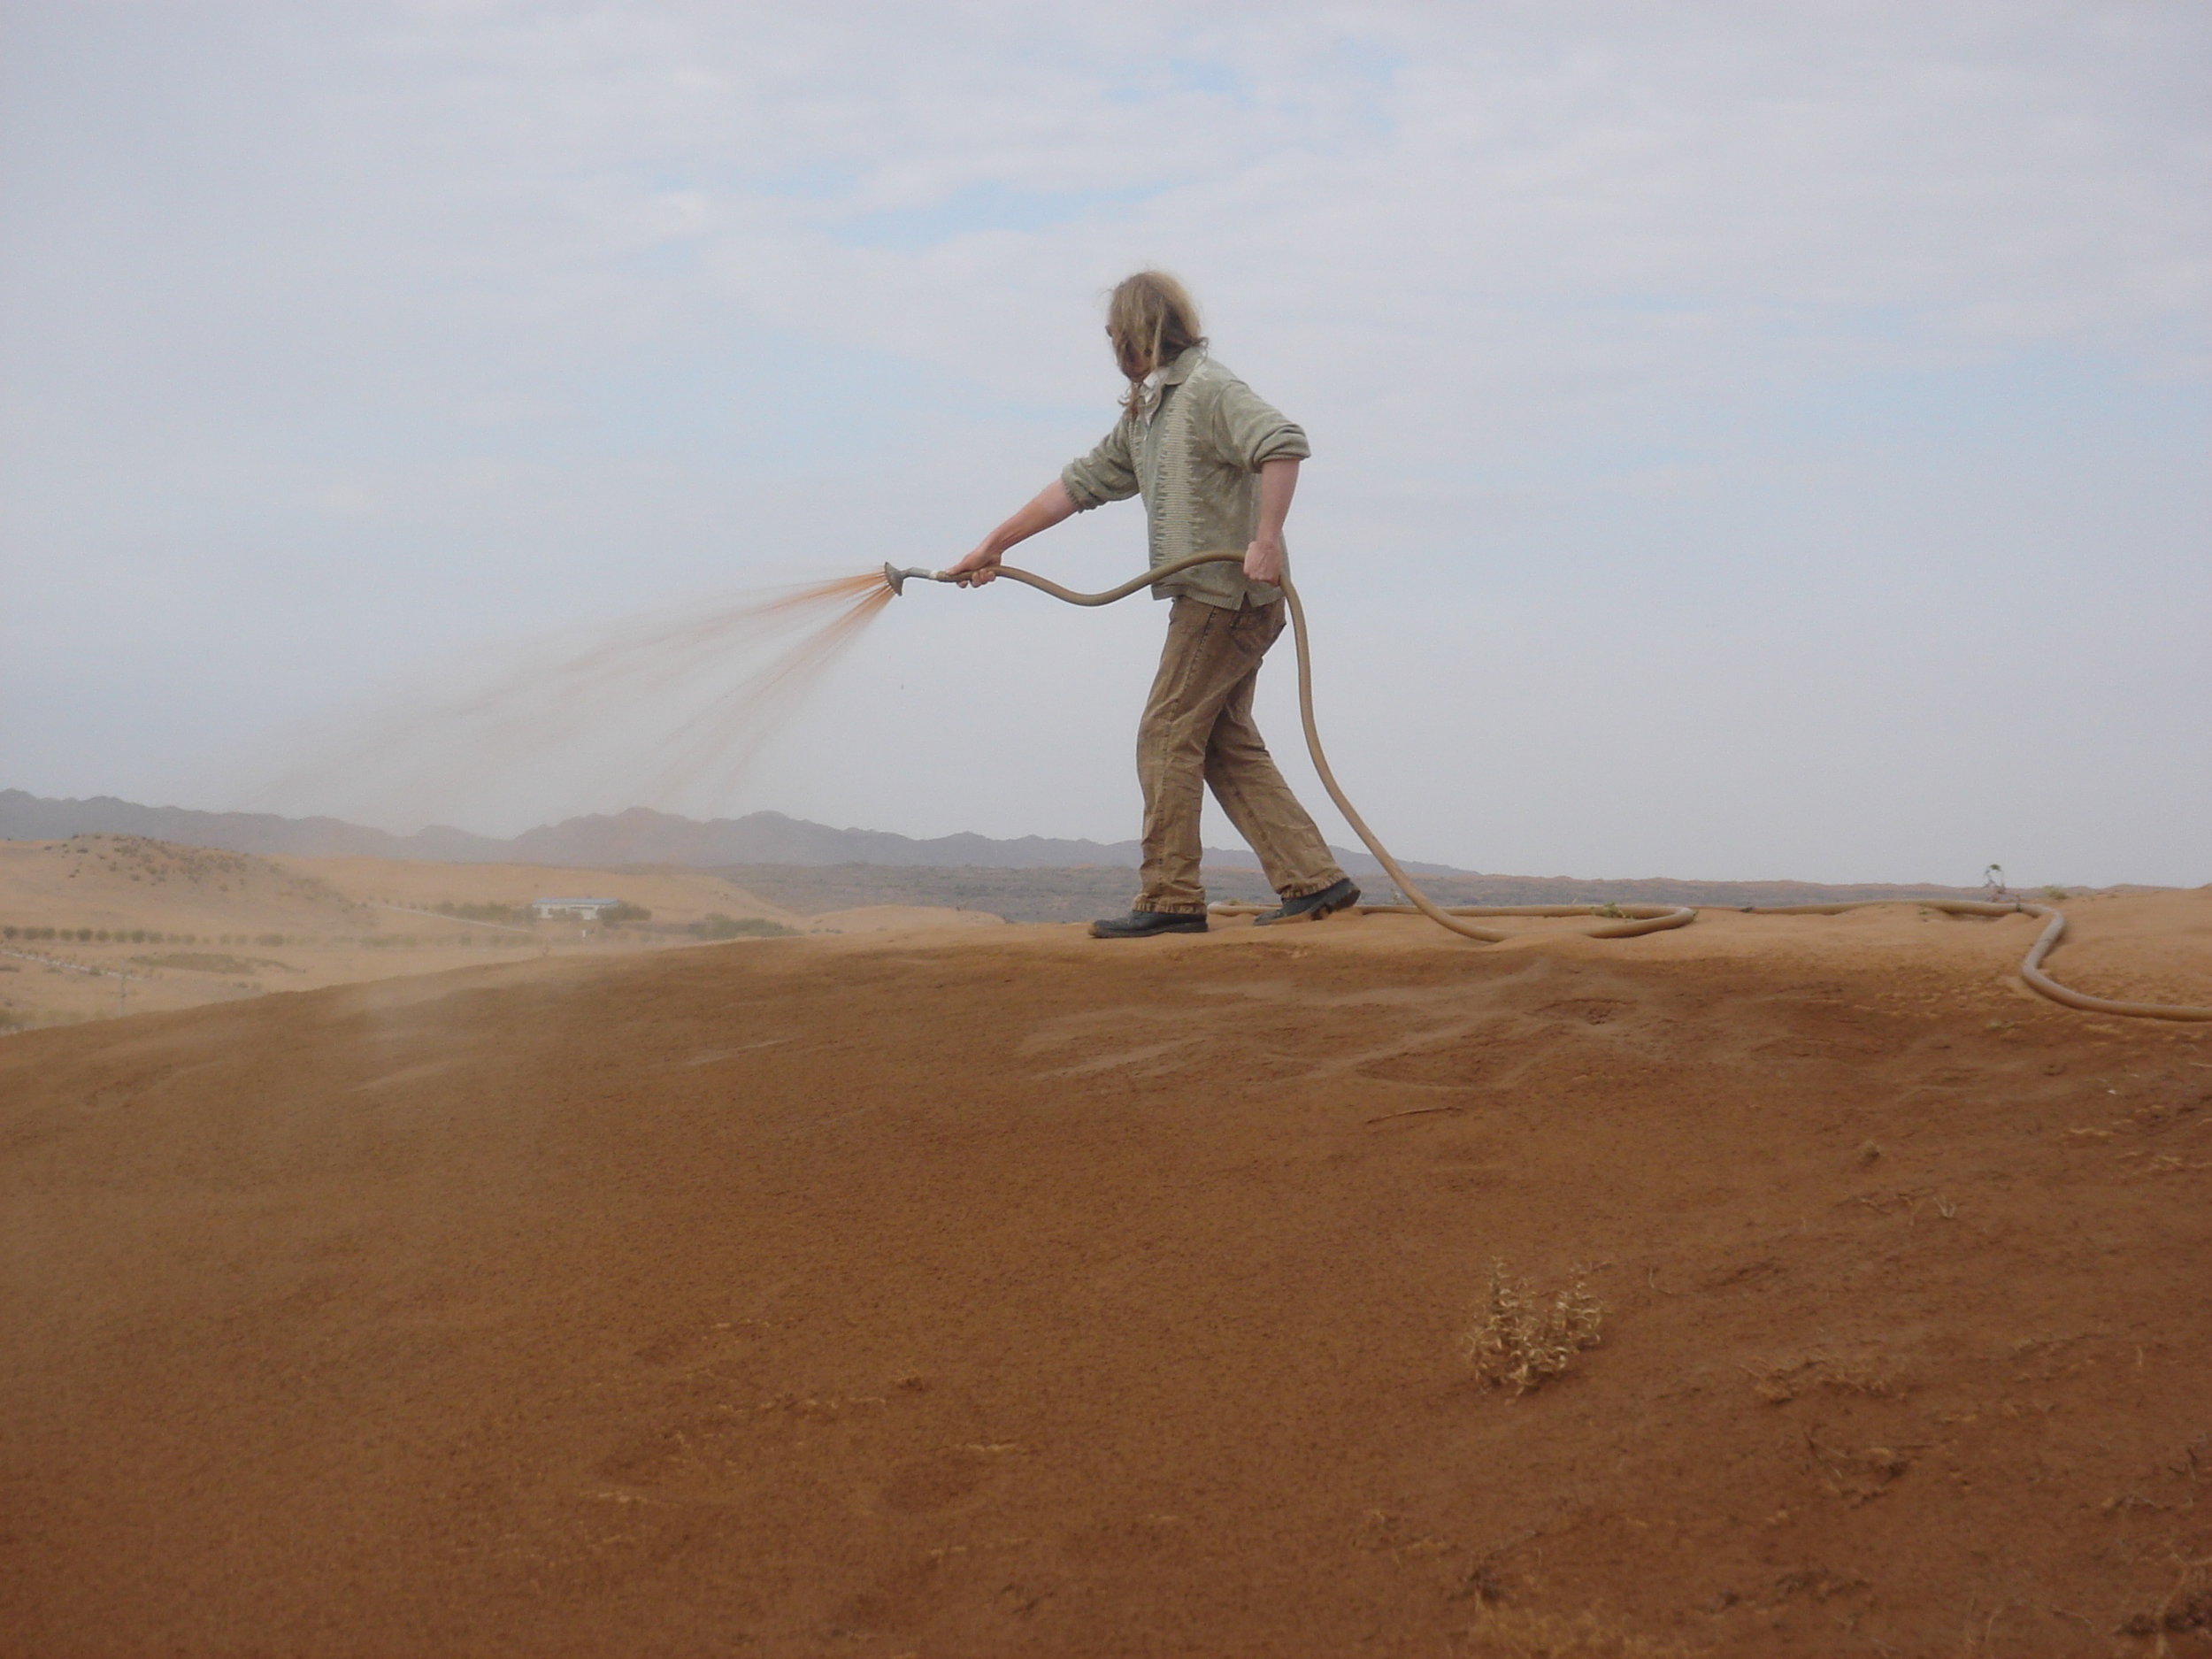 اختراع مادة تحول رمال الصحراء إلى تربة خصبة 